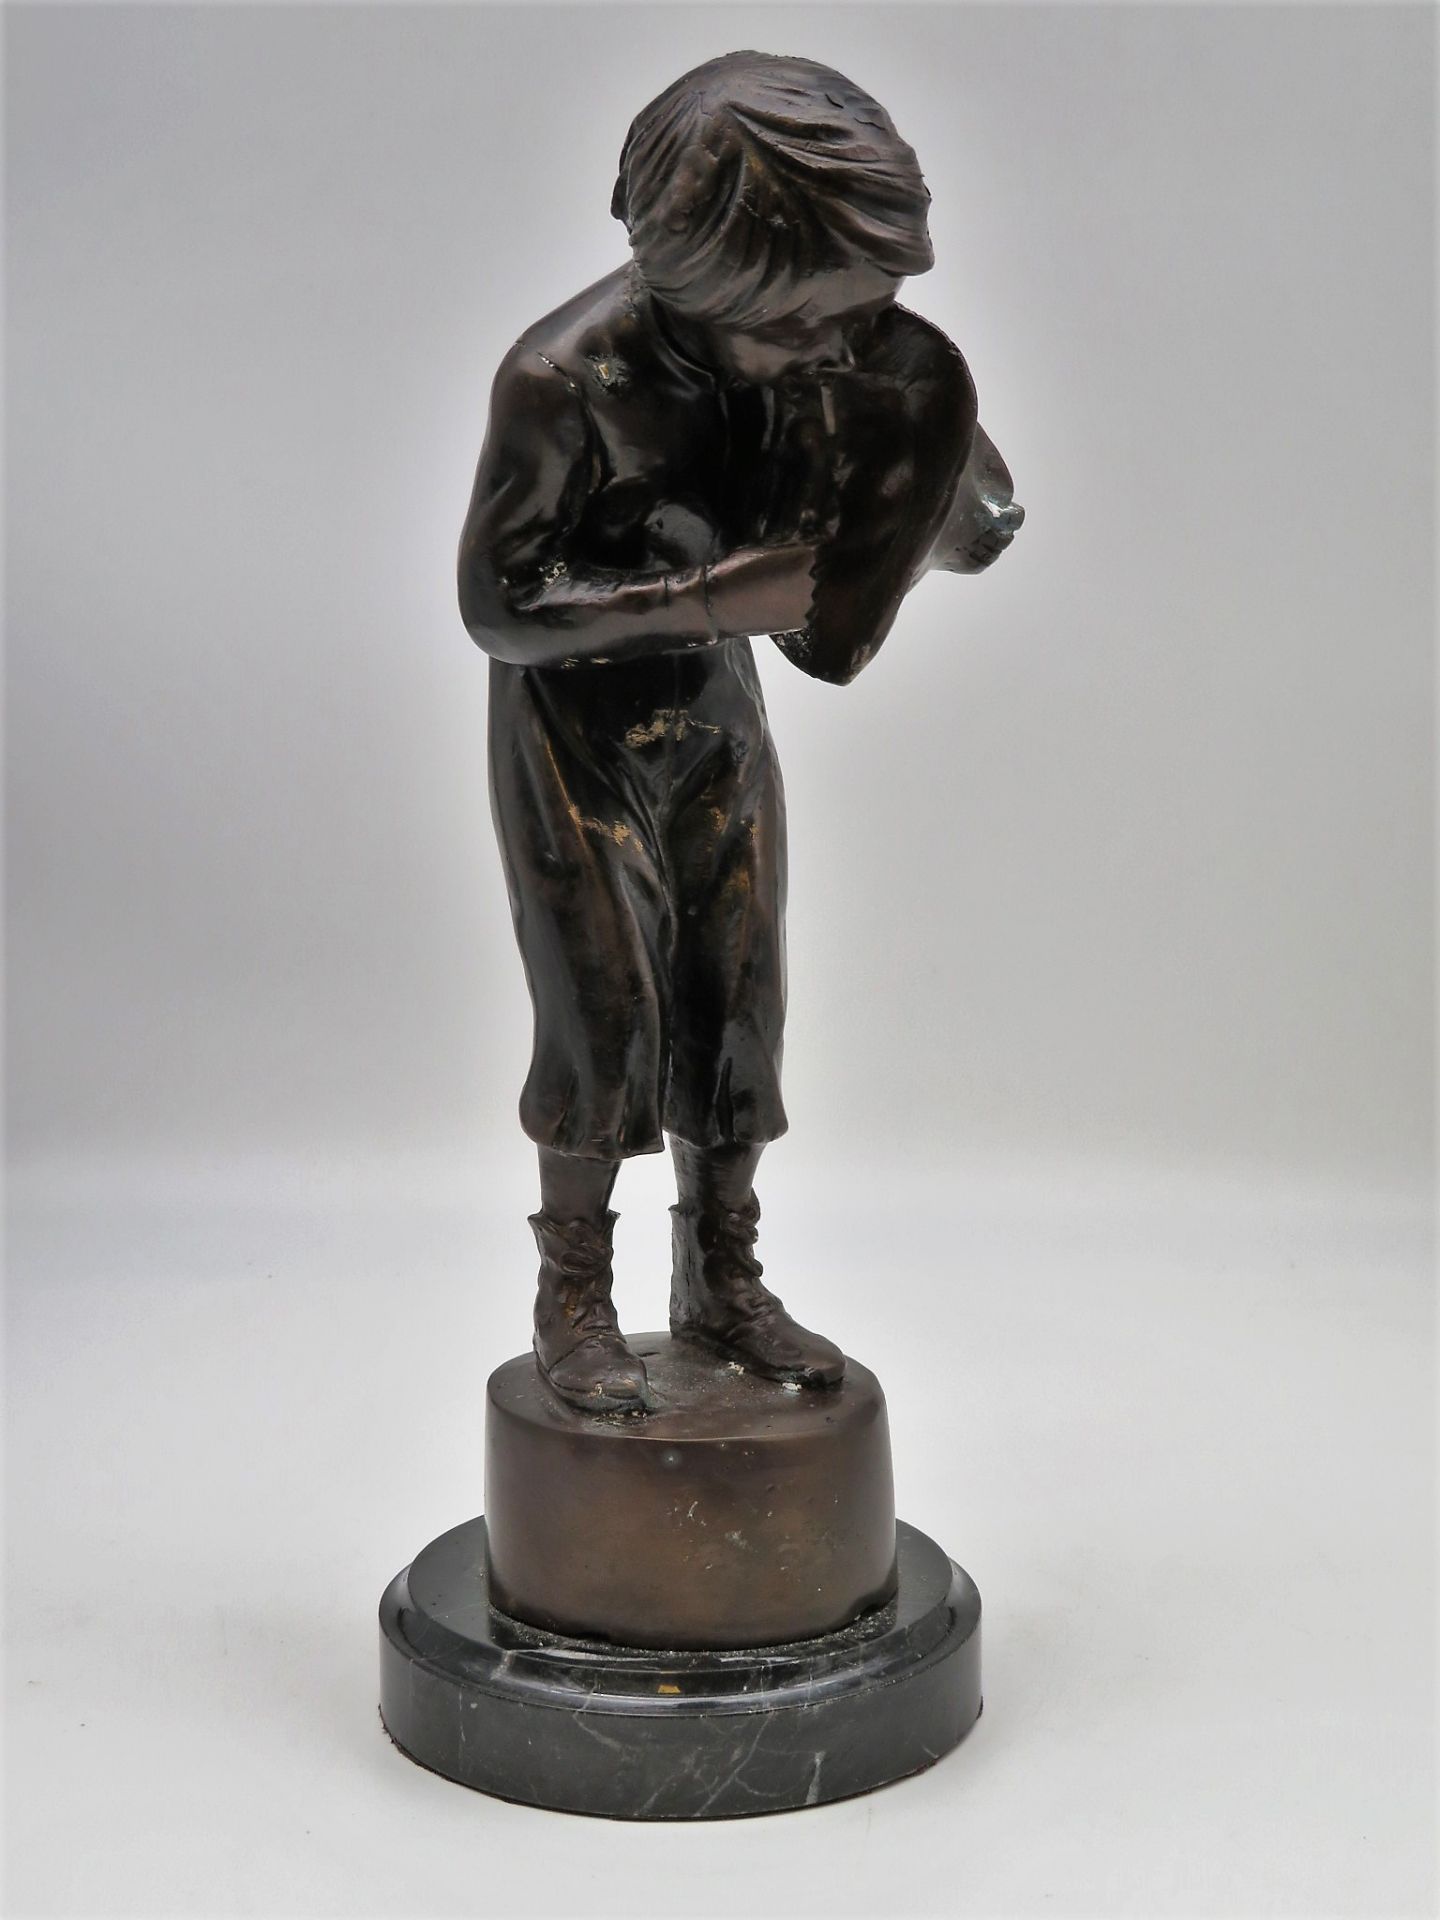 Unbekannt, nach Moreau, "Rauchender Junge im Wind", Bronze, Marmorsockel, h 34 cm, d 11 cm.